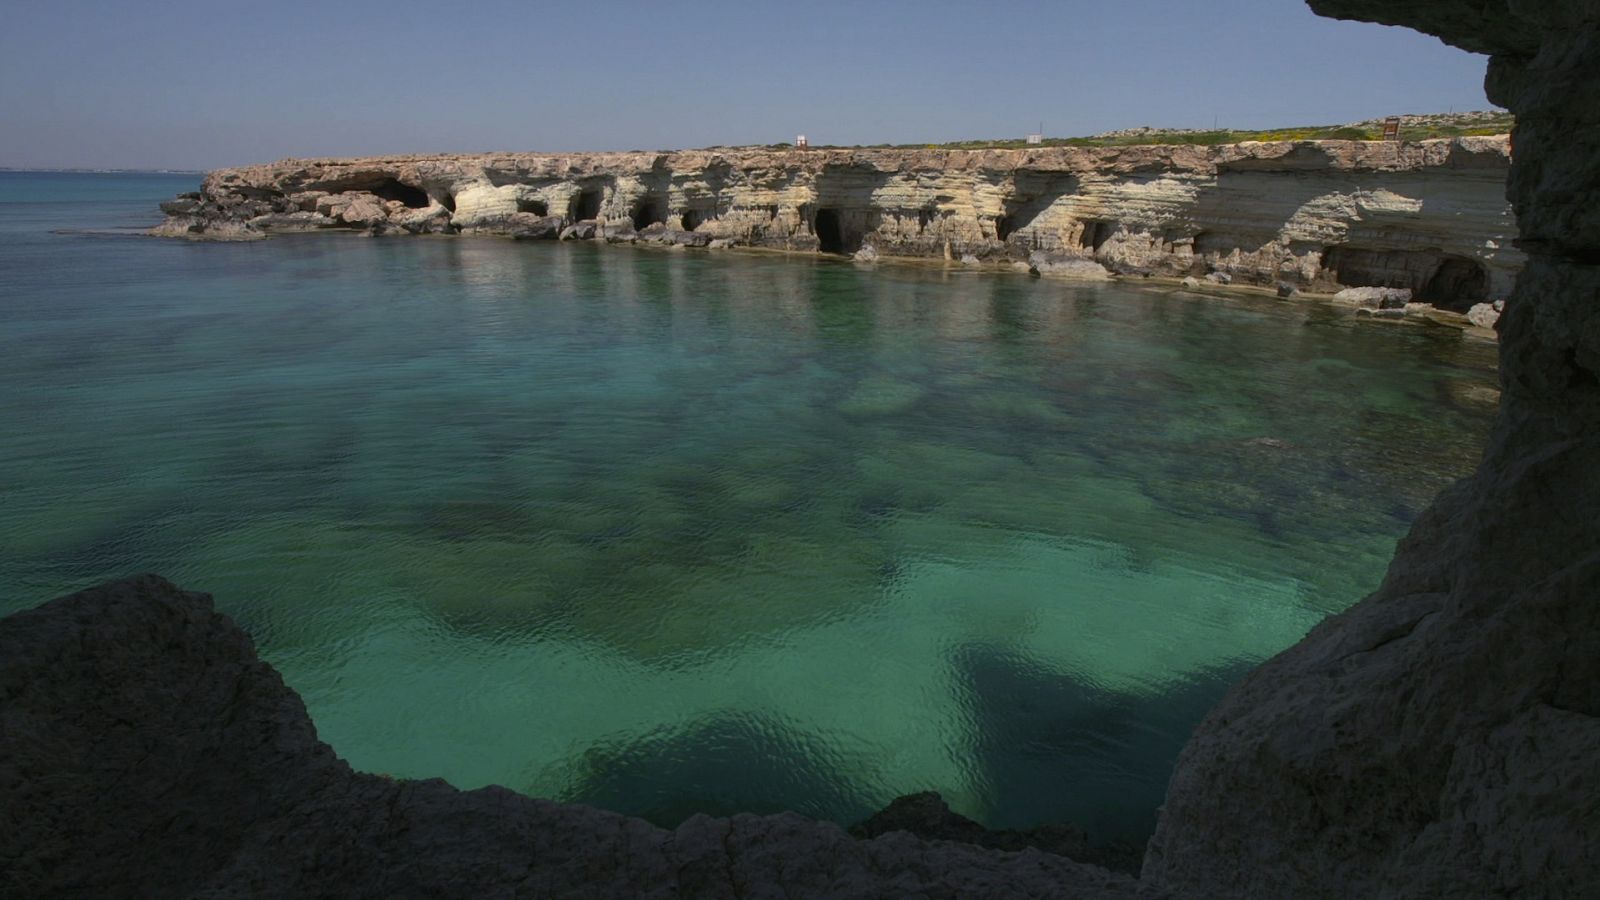  Paisatge costaner de Xipre amb el mar blau i les roques al voltant